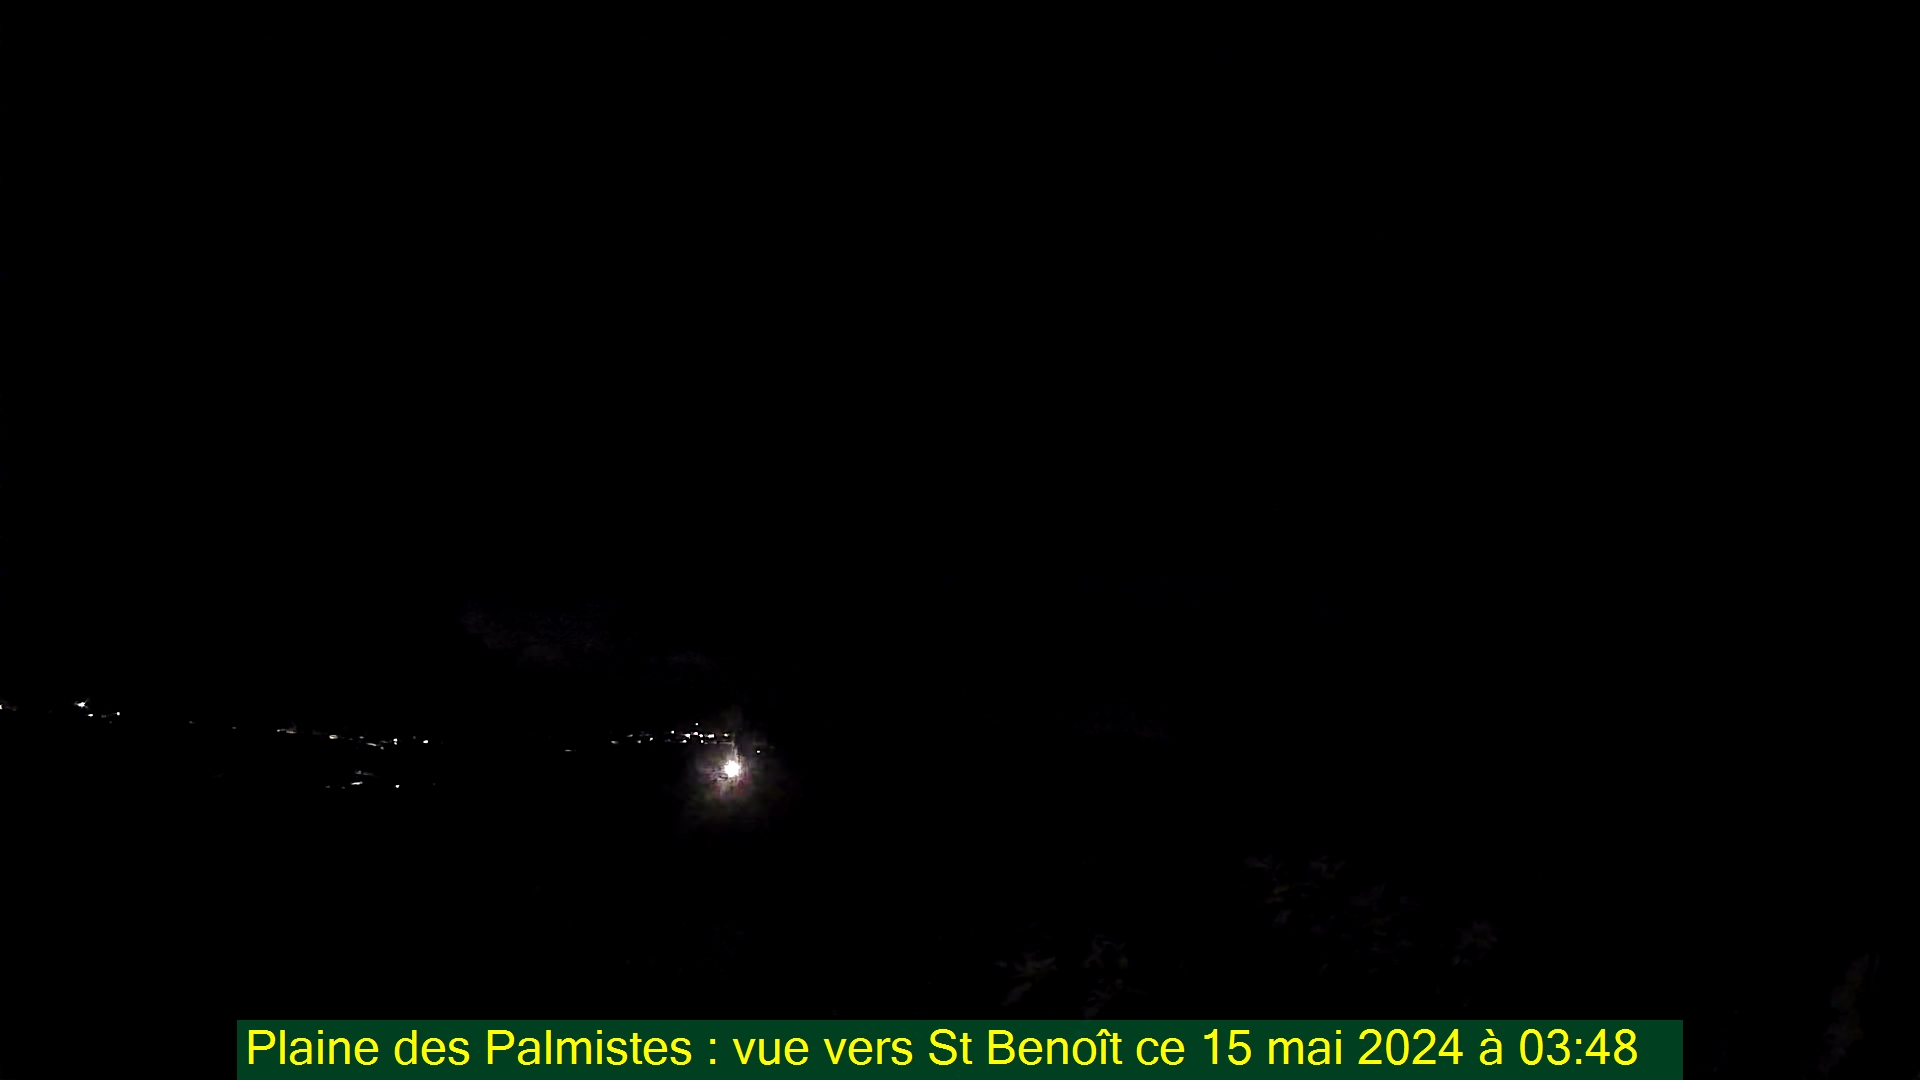 Saint-Denis (Réunion) Do. 03:50